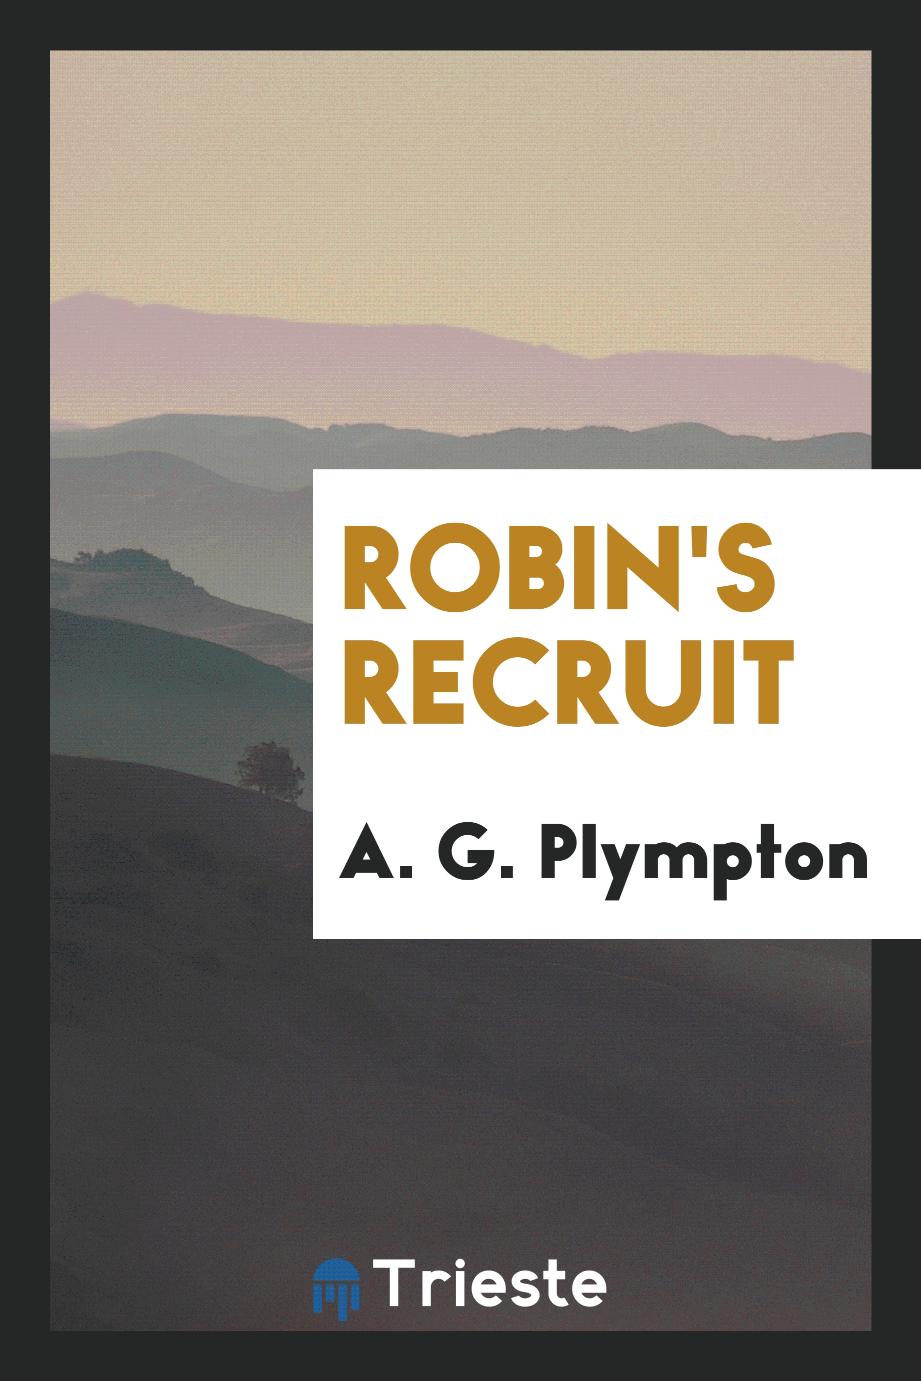 Robin's recruit